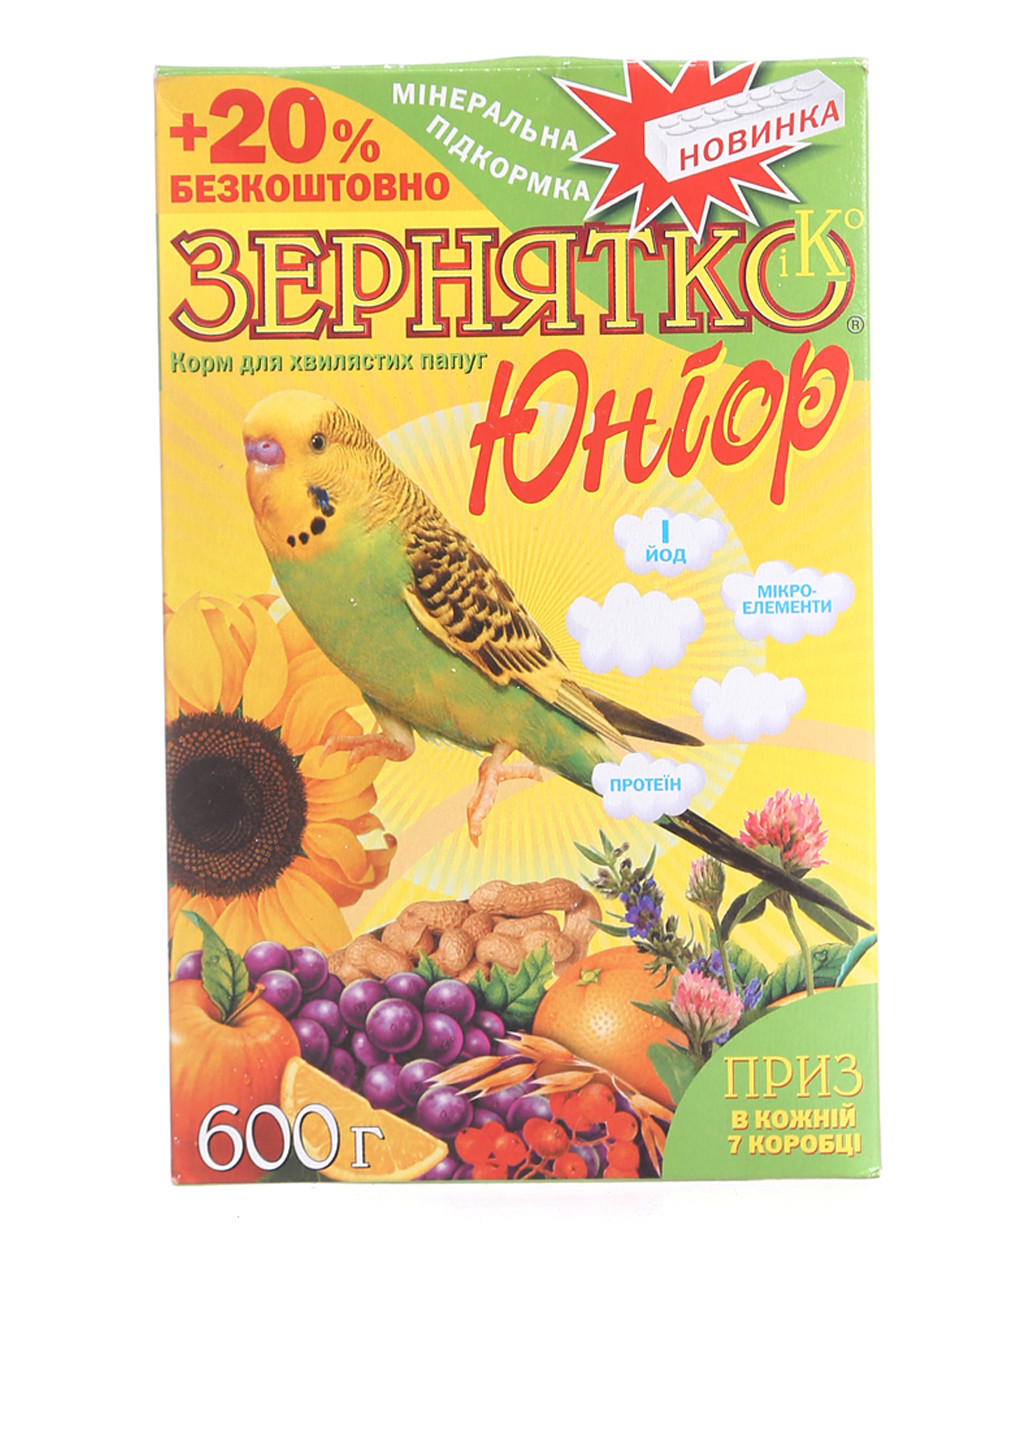 Сухой корм для птиц Юниор, 600 г Зернятко (78697325)